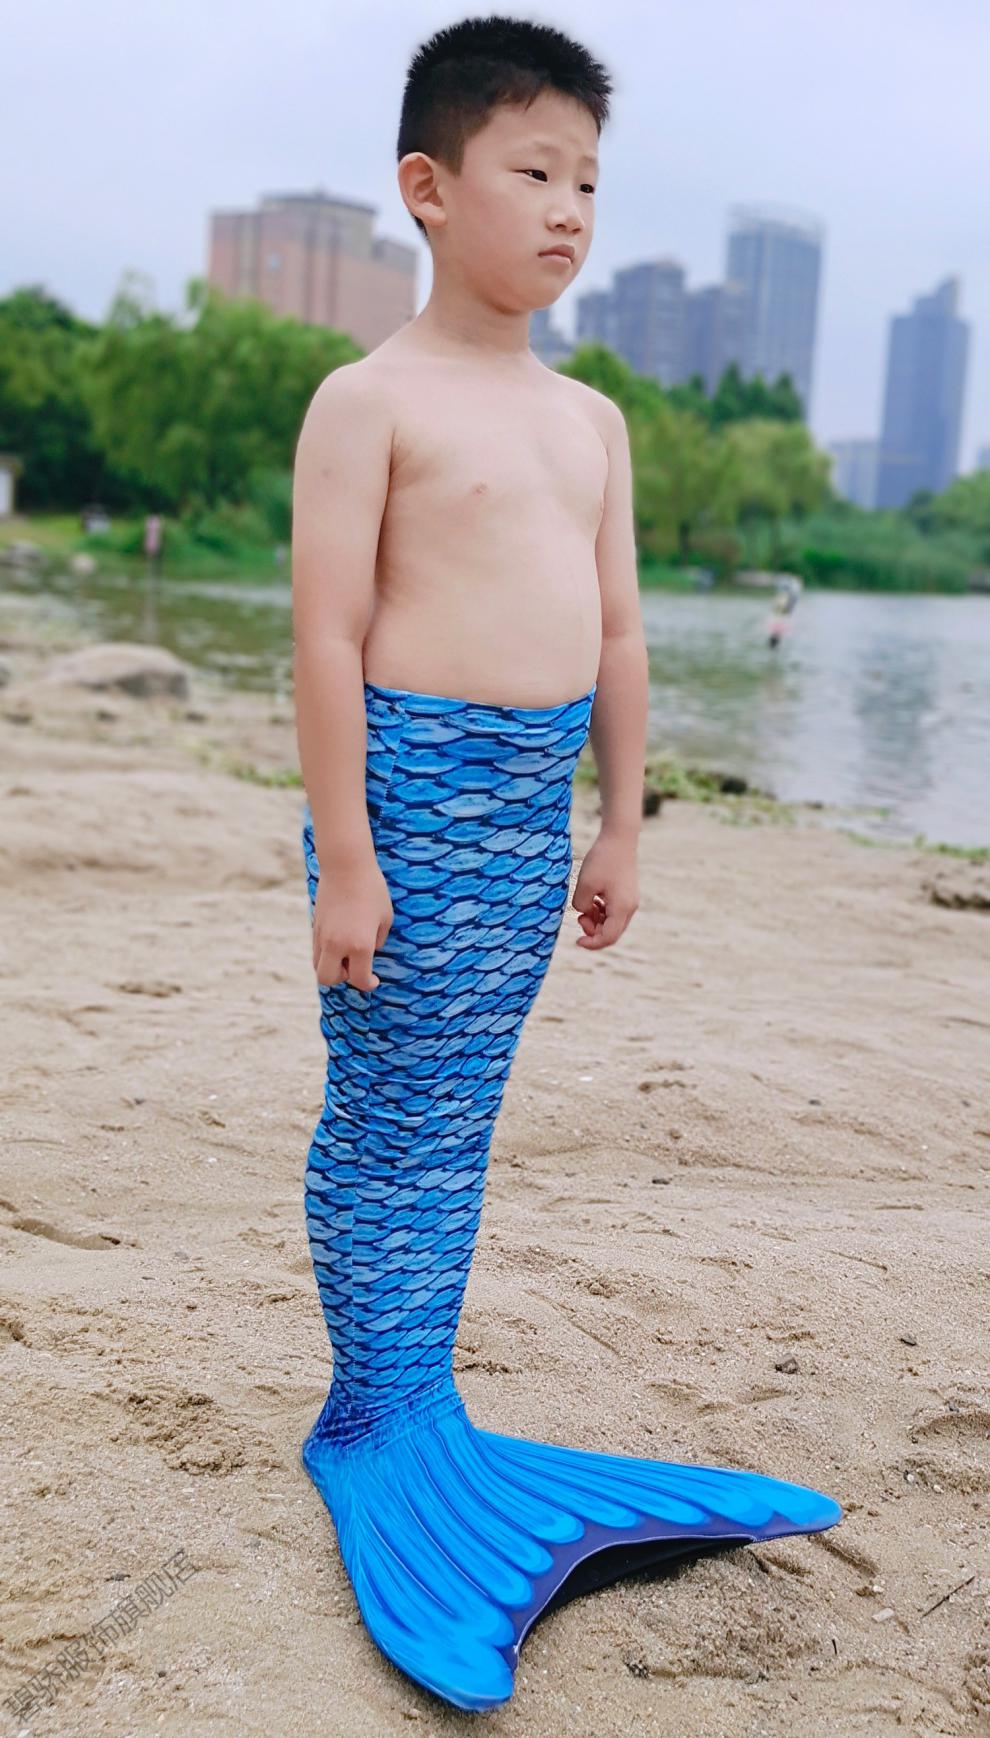 男生的美人鱼尾巴男童男孩泳衣泳装服装衣服儿童人鱼拍照道具f女孩三